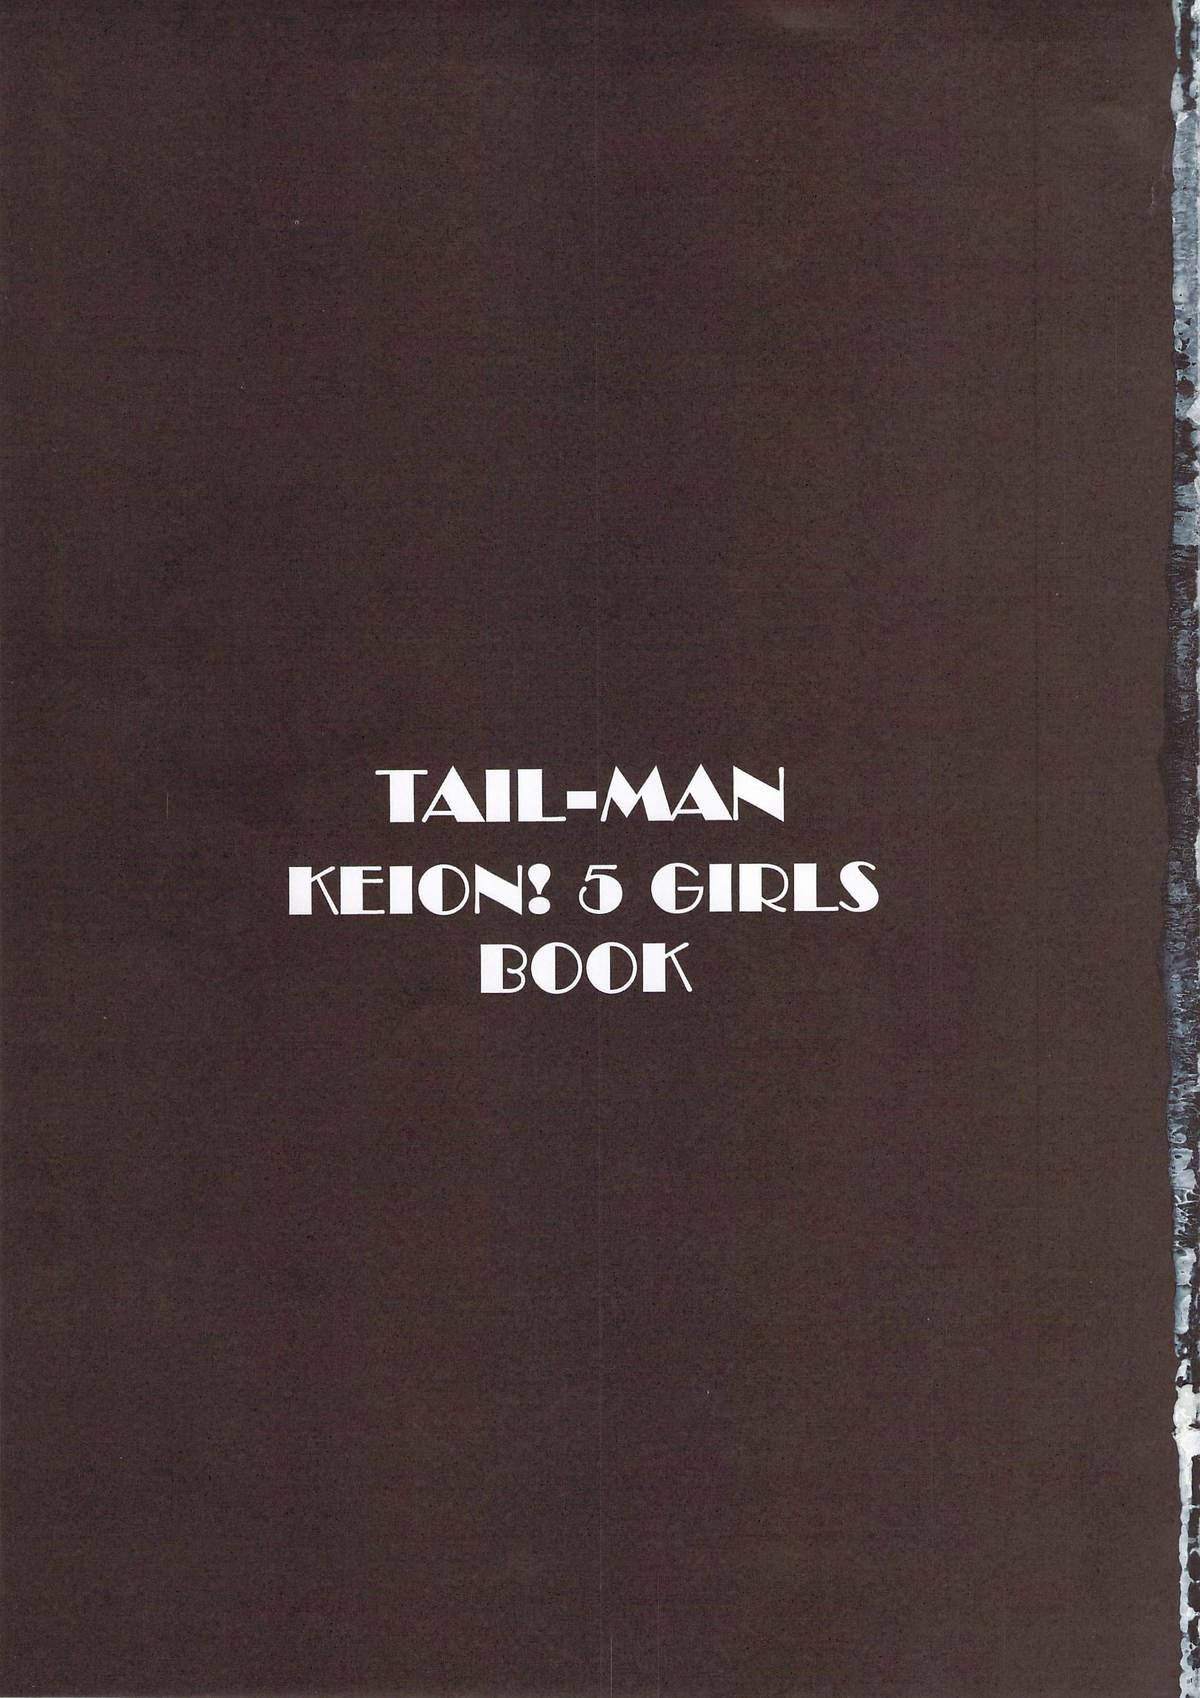 TAIL-MAN KEION! 5GIRLS BOOK BOOK 1